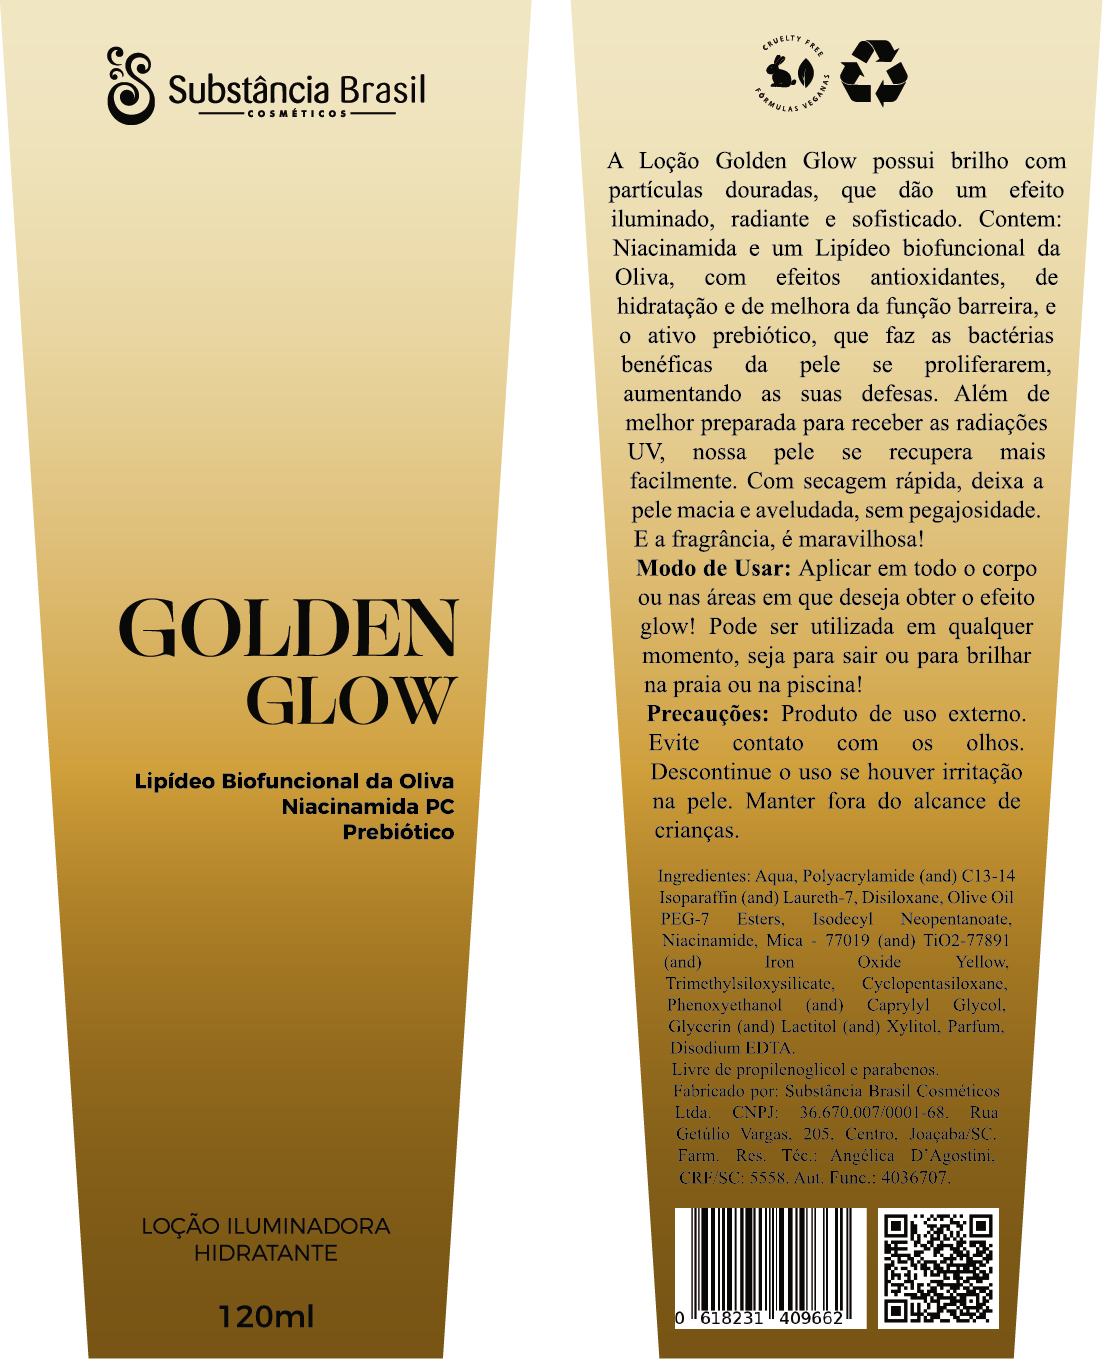 Cosmetic cosmetics Dermocosmetic Dourado glow gold golden Iluminación Iluminador